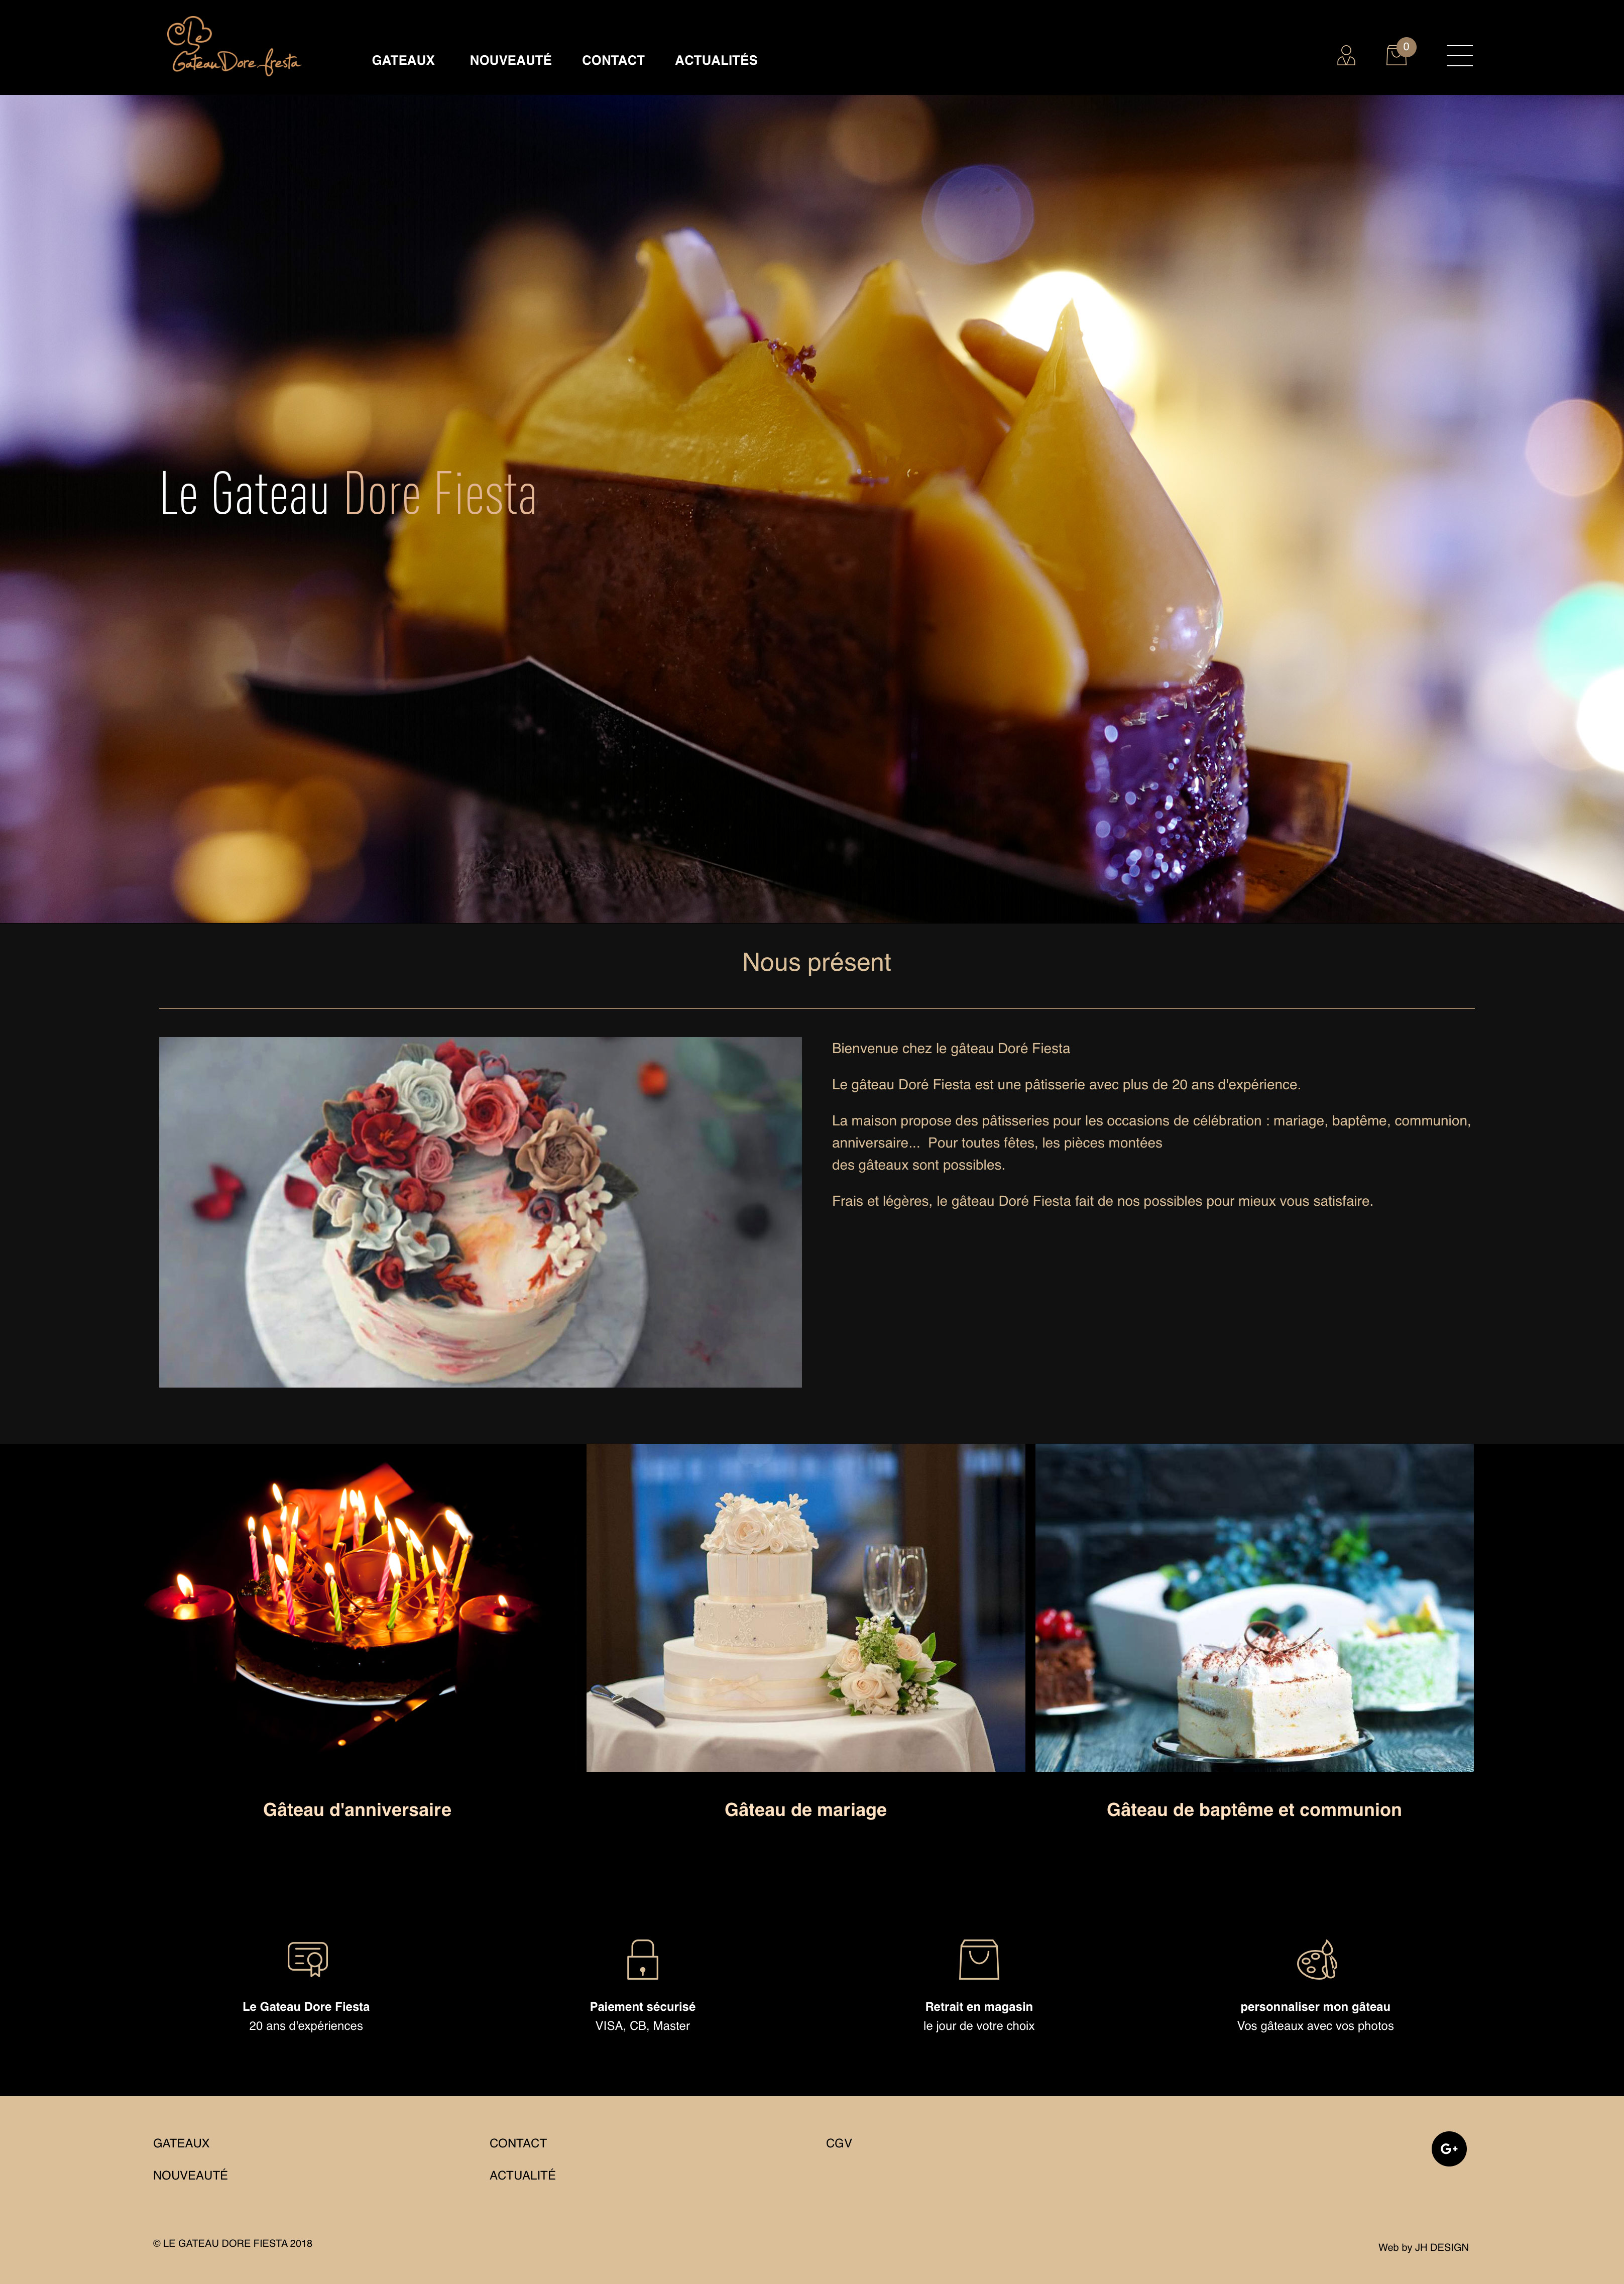 蛋糕网站